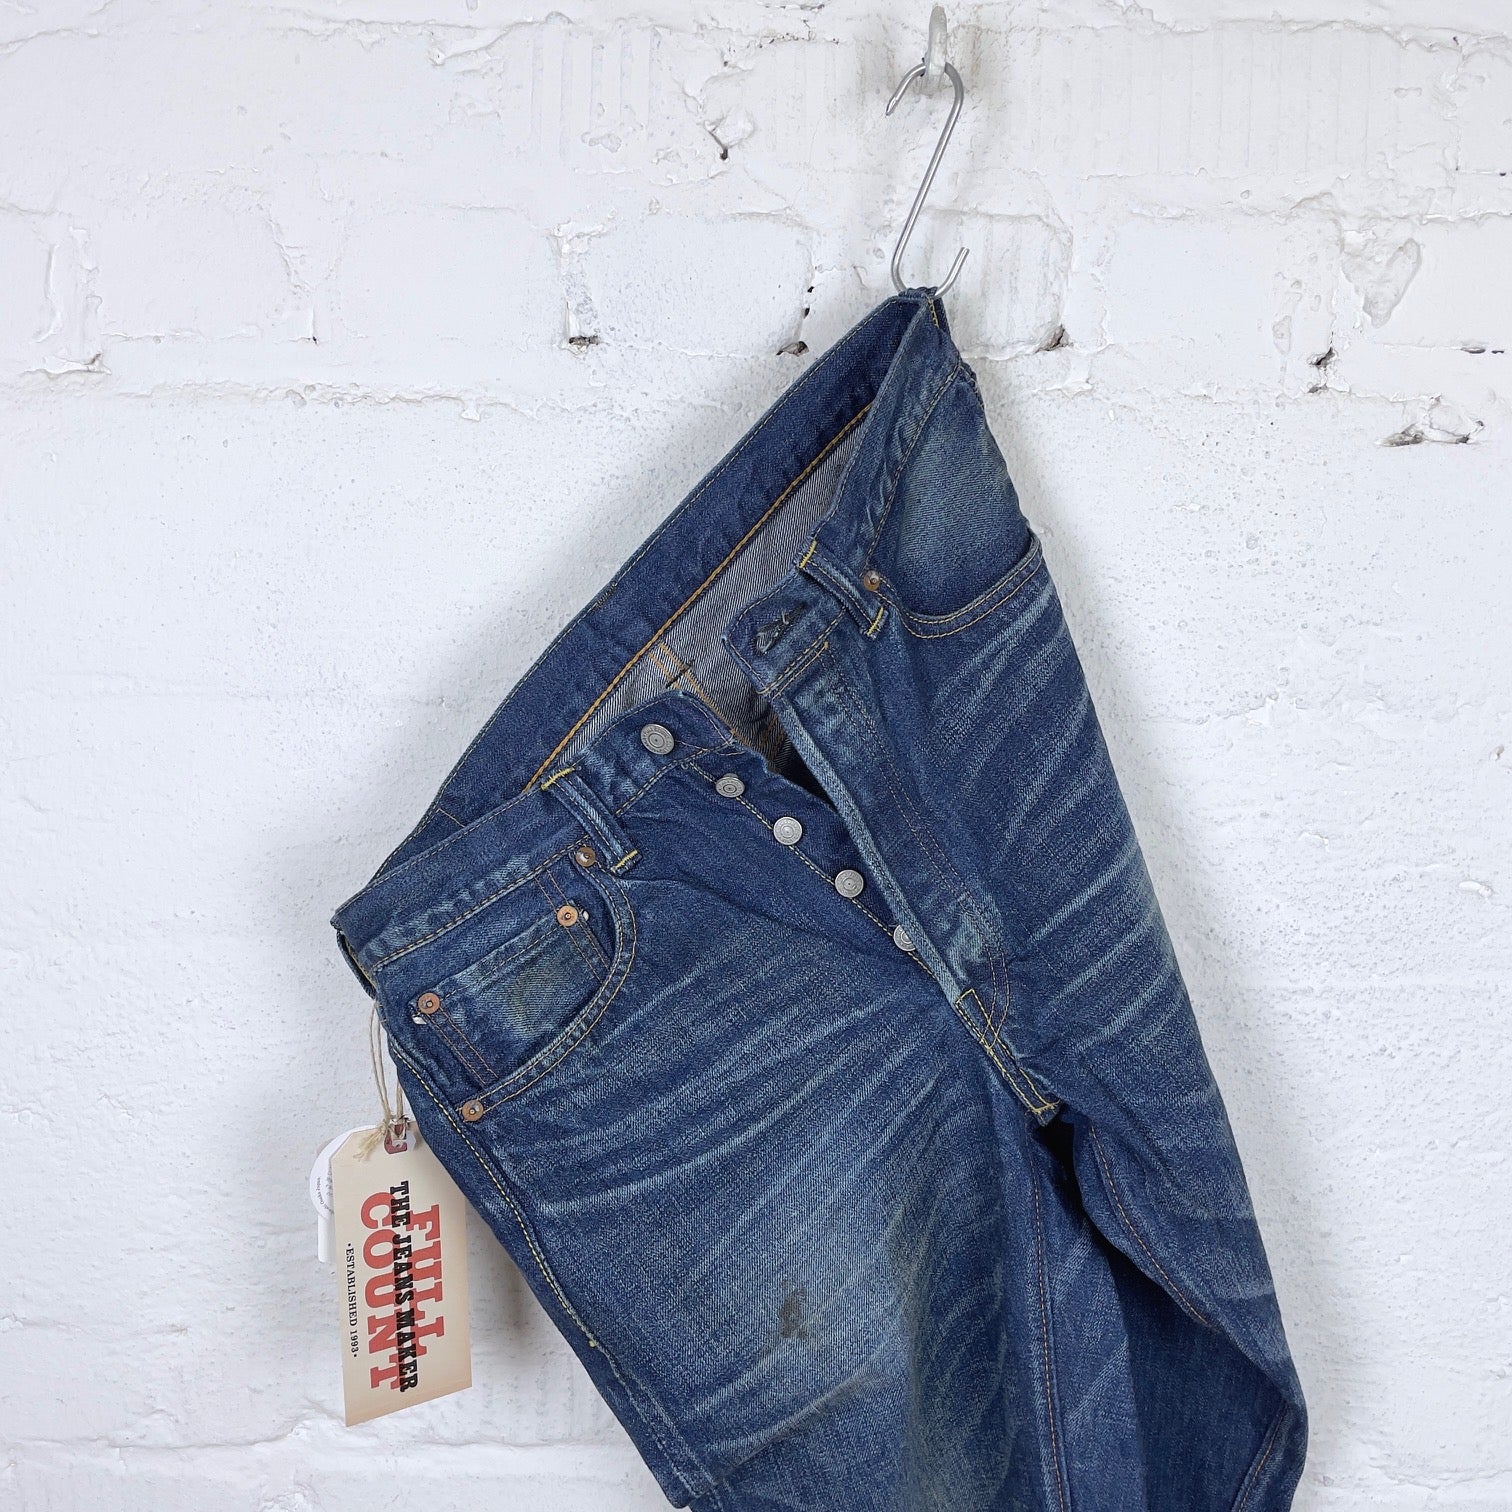 https://stuf-f.com/cdn/shop/products/fullcount-1344-1101-dartford-vintage-finished-jeans-4.jpg?v=1685574228